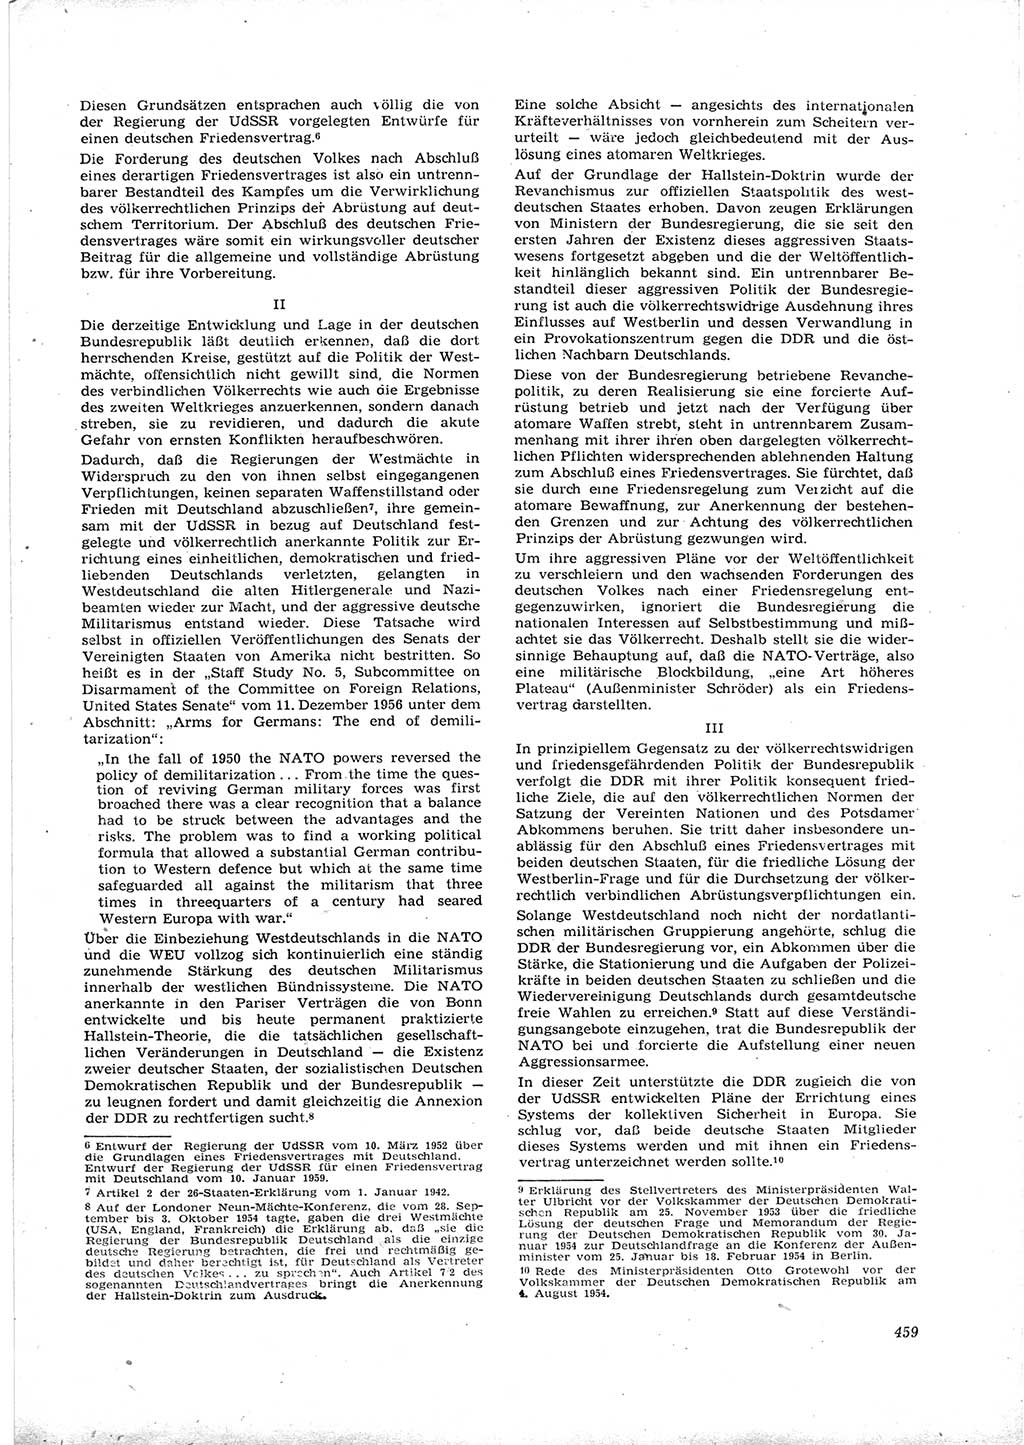 Neue Justiz (NJ), Zeitschrift für Recht und Rechtswissenschaft [Deutsche Demokratische Republik (DDR)], 16. Jahrgang 1962, Seite 459 (NJ DDR 1962, S. 459)